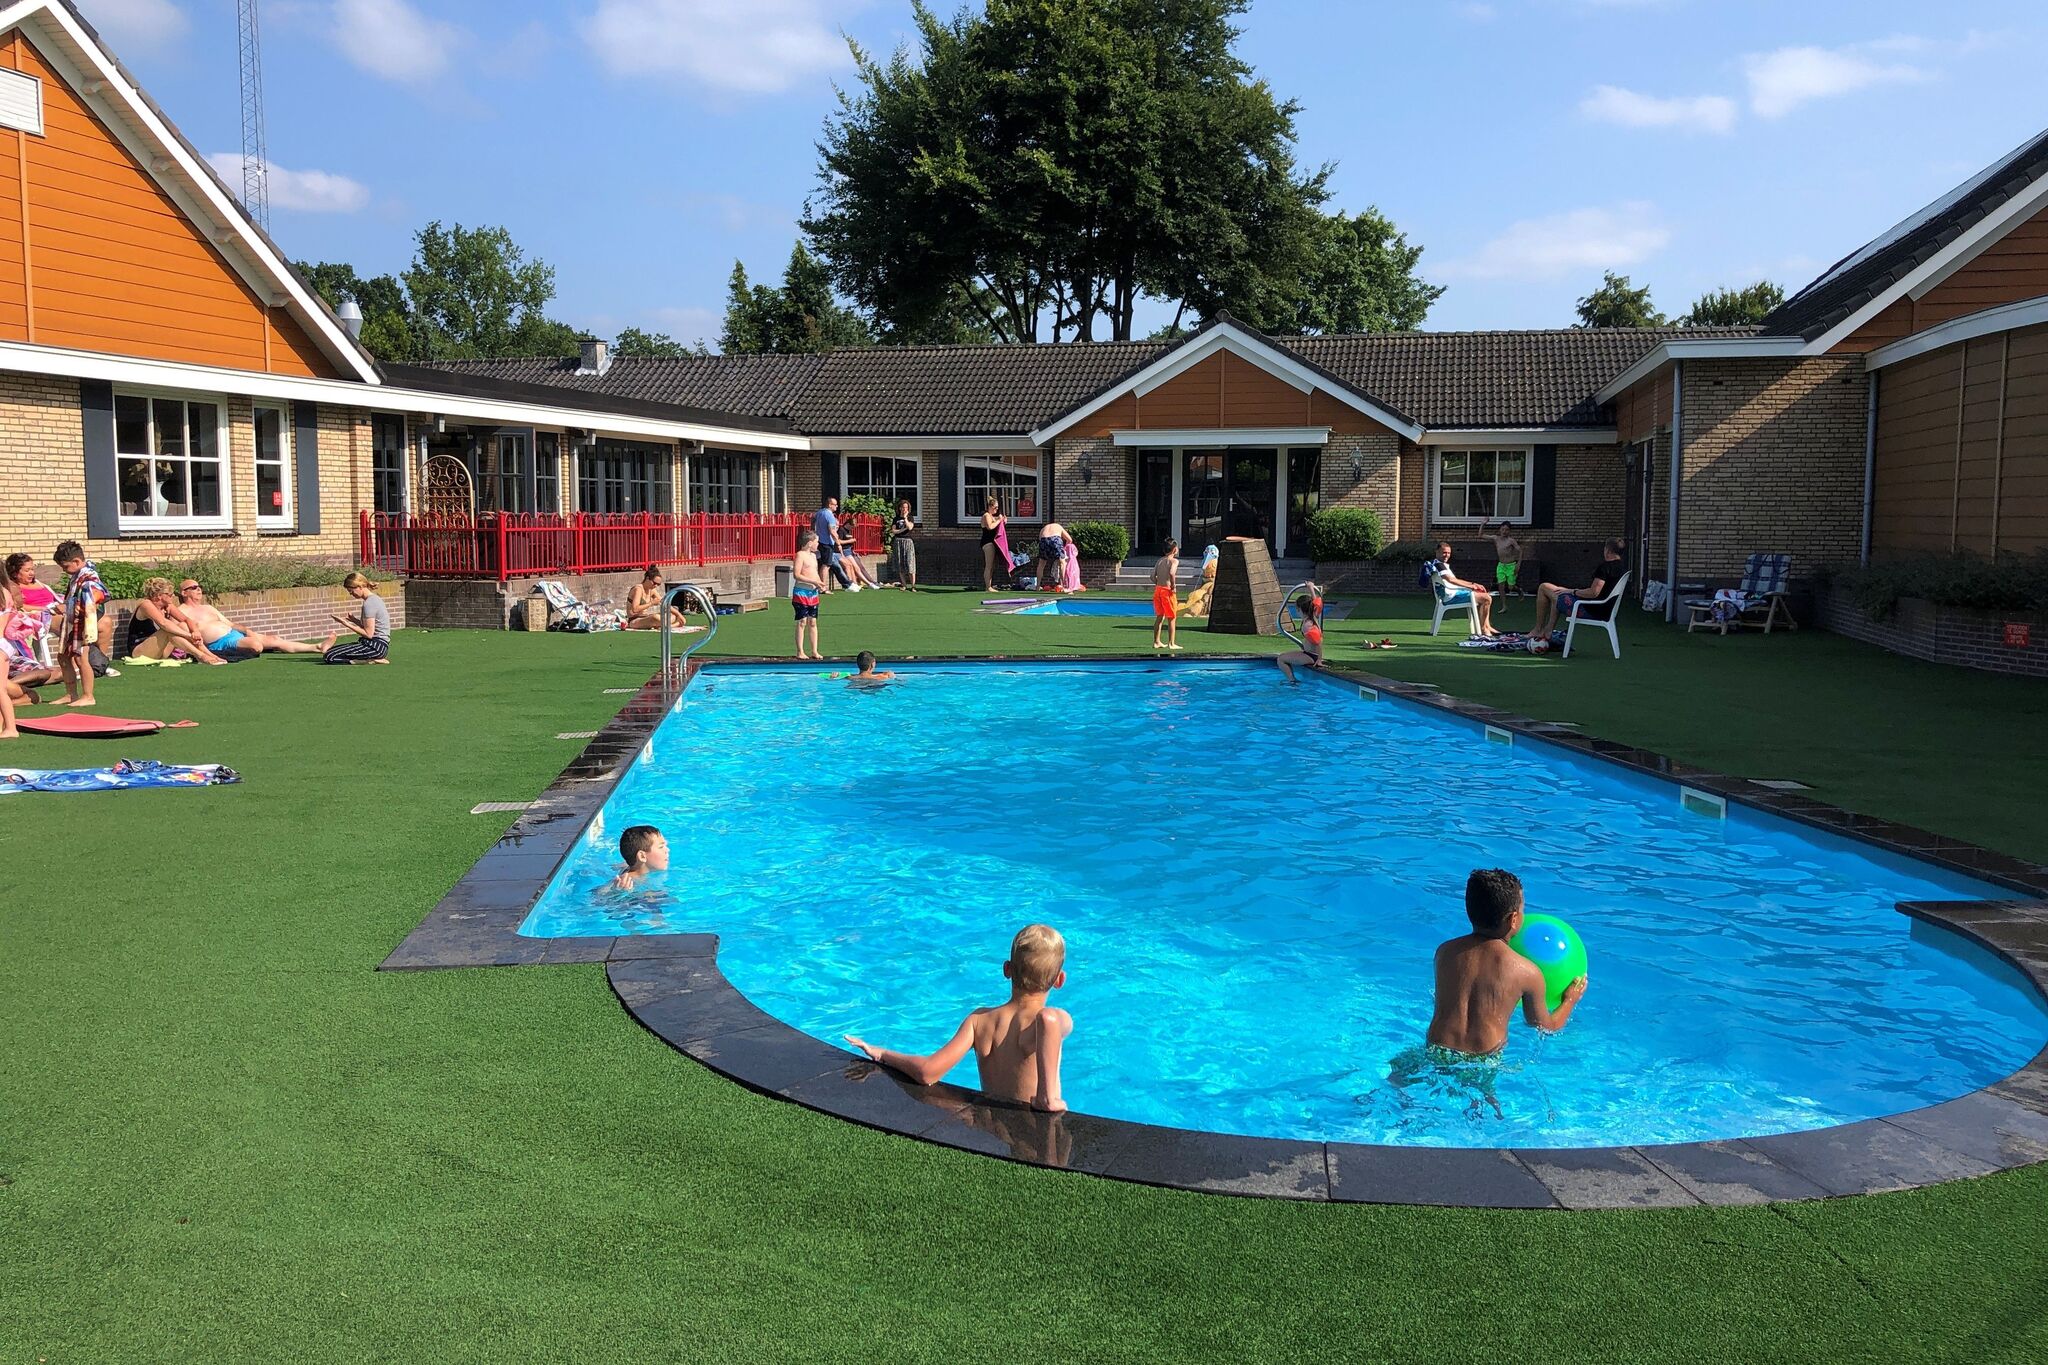 Chalet in Voorthuizen with indoor pool